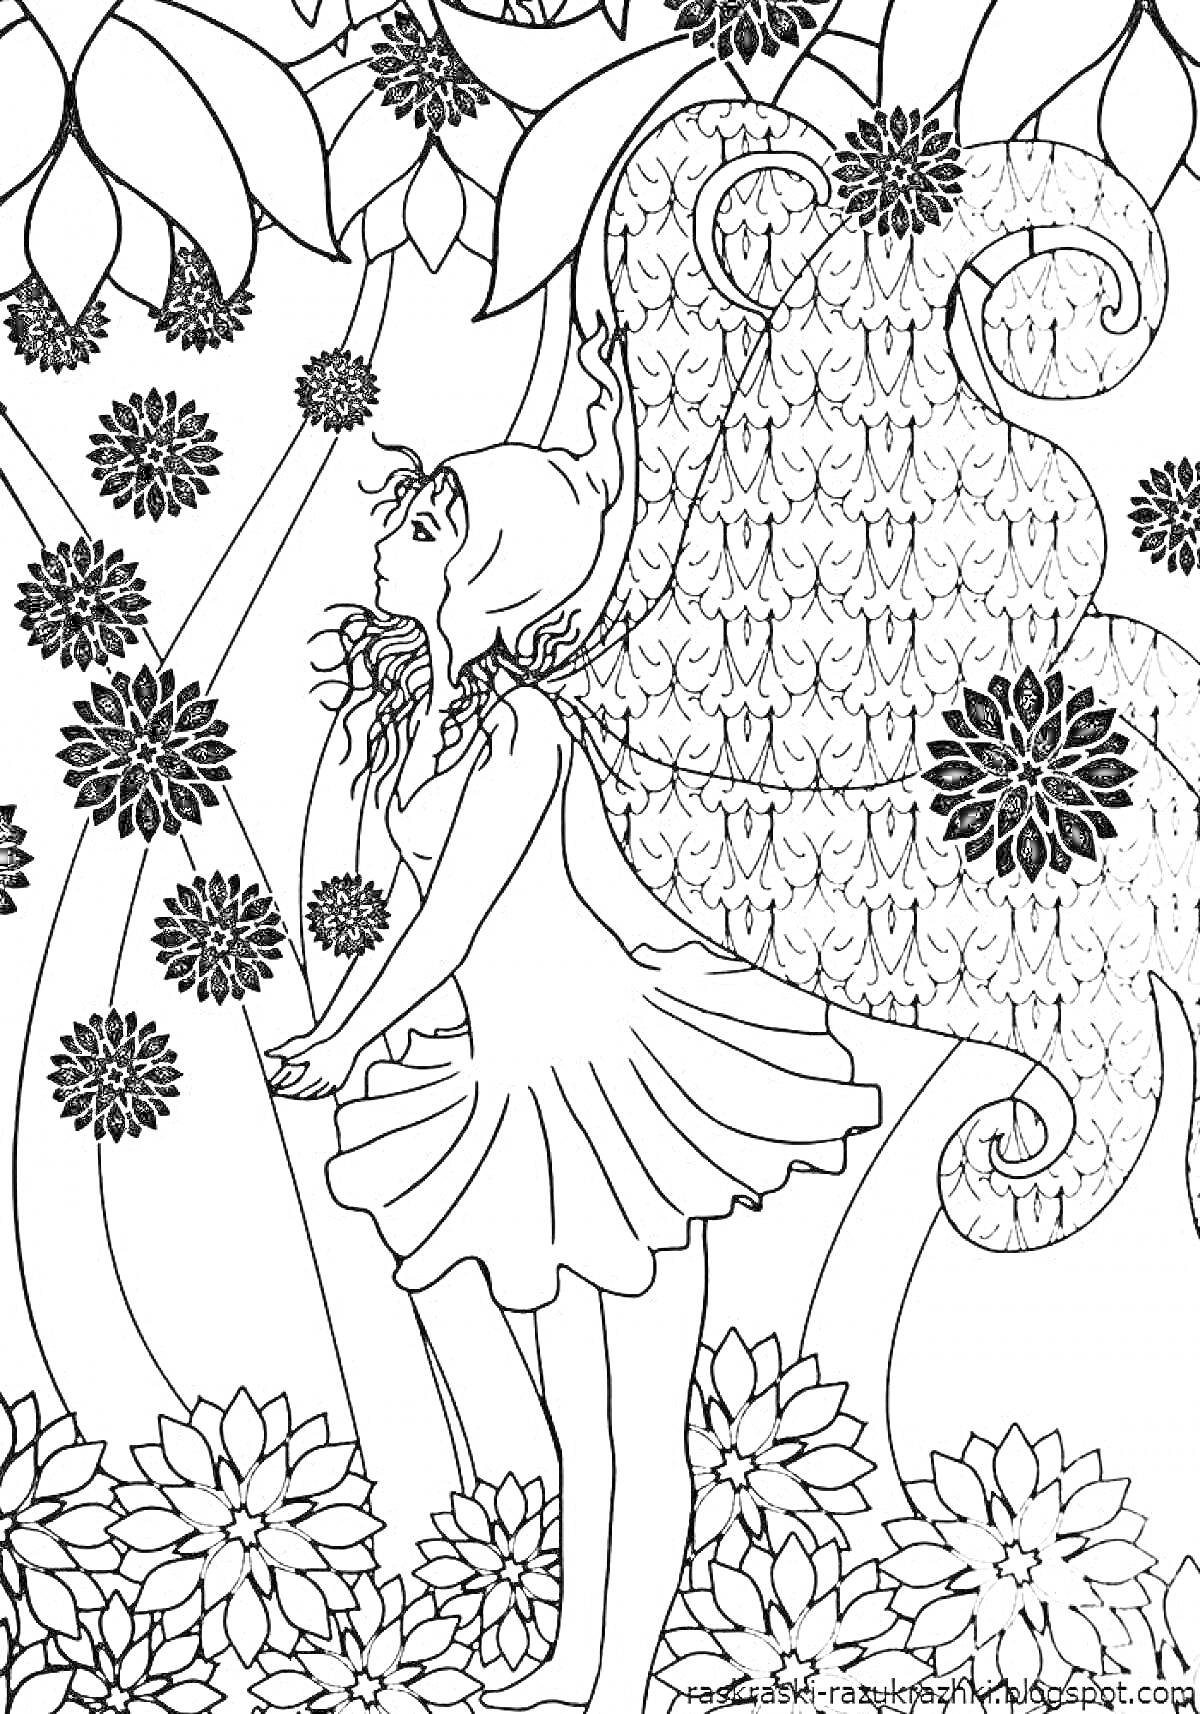 Раскраска Фея среди цветов с крупными крыльями и шляпкой, окруженная большими и маленькими цветами и извивающимися растениями